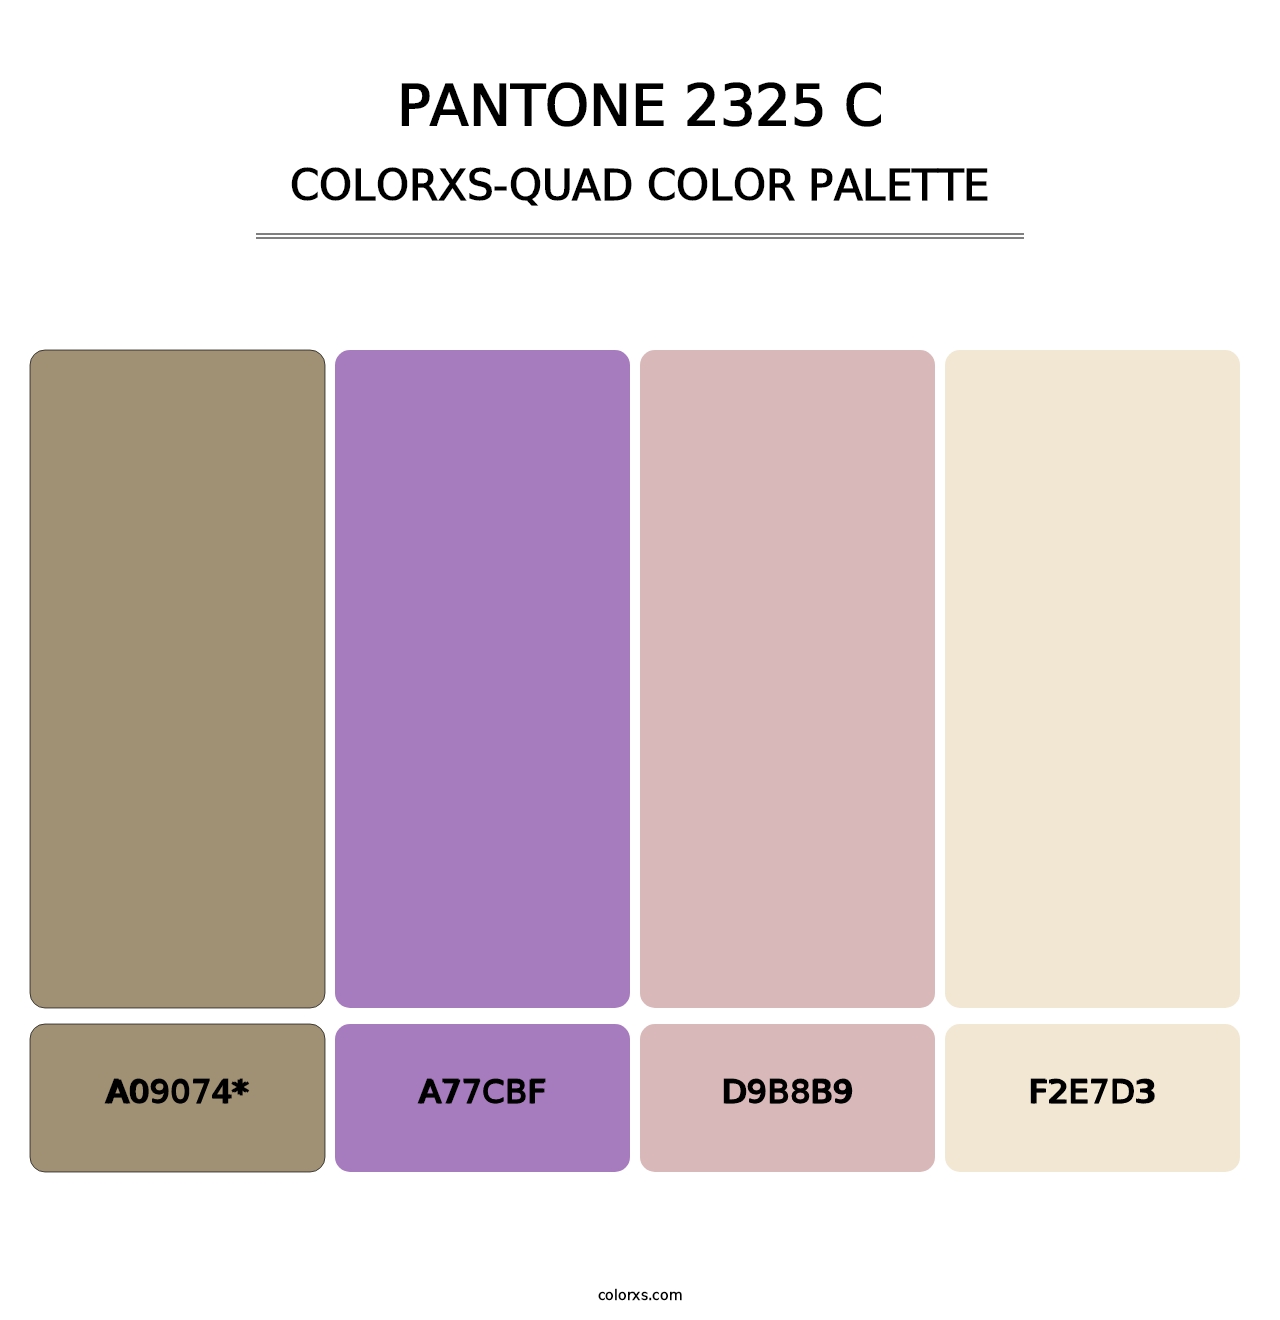 PANTONE 2325 C - Colorxs Quad Palette